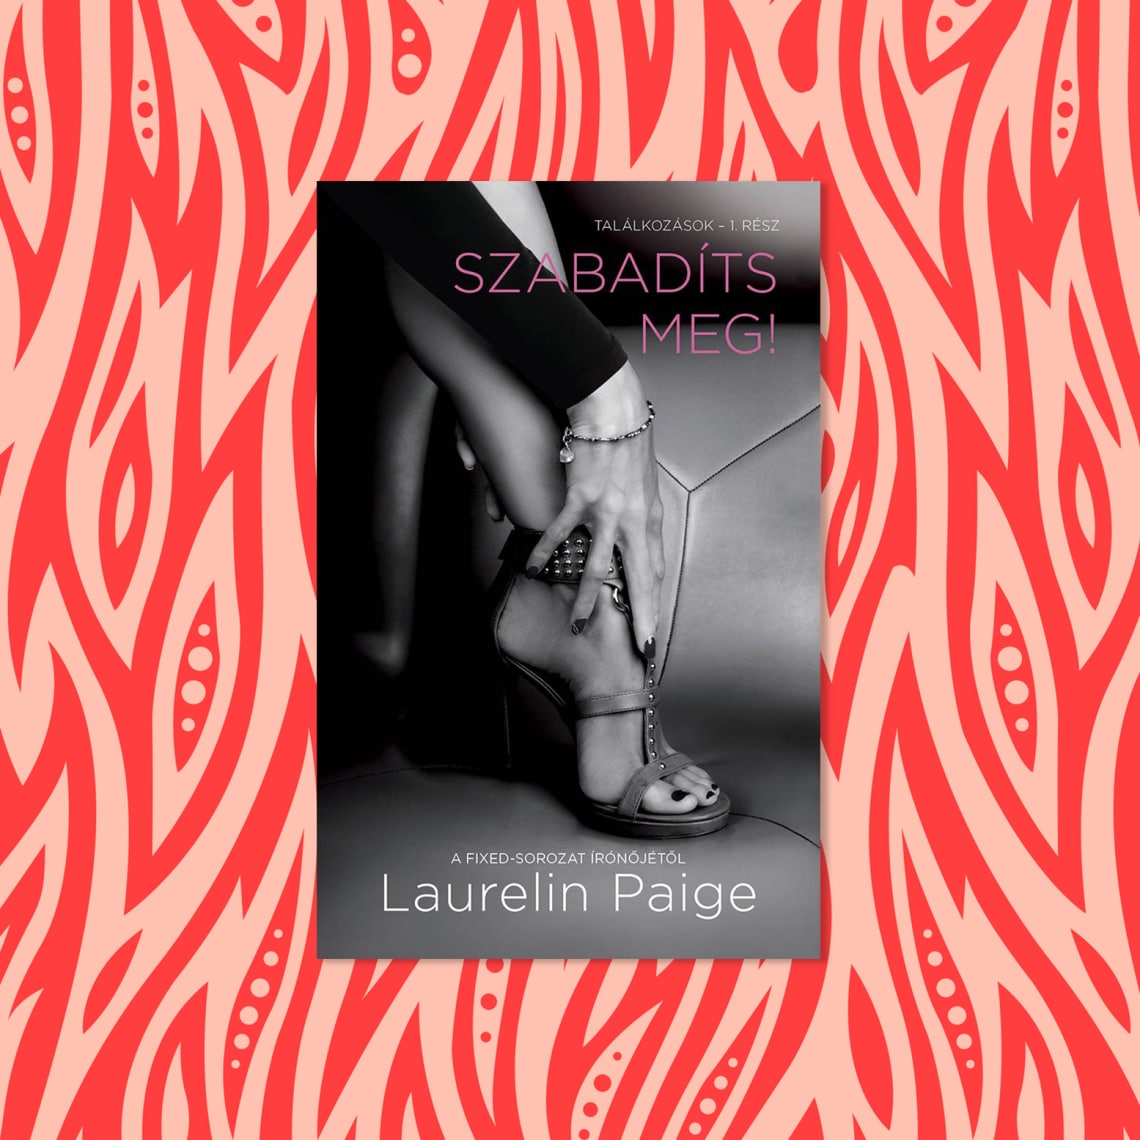 Laurelin Paige - Szabadíts meg! - Találkozások 1. rész